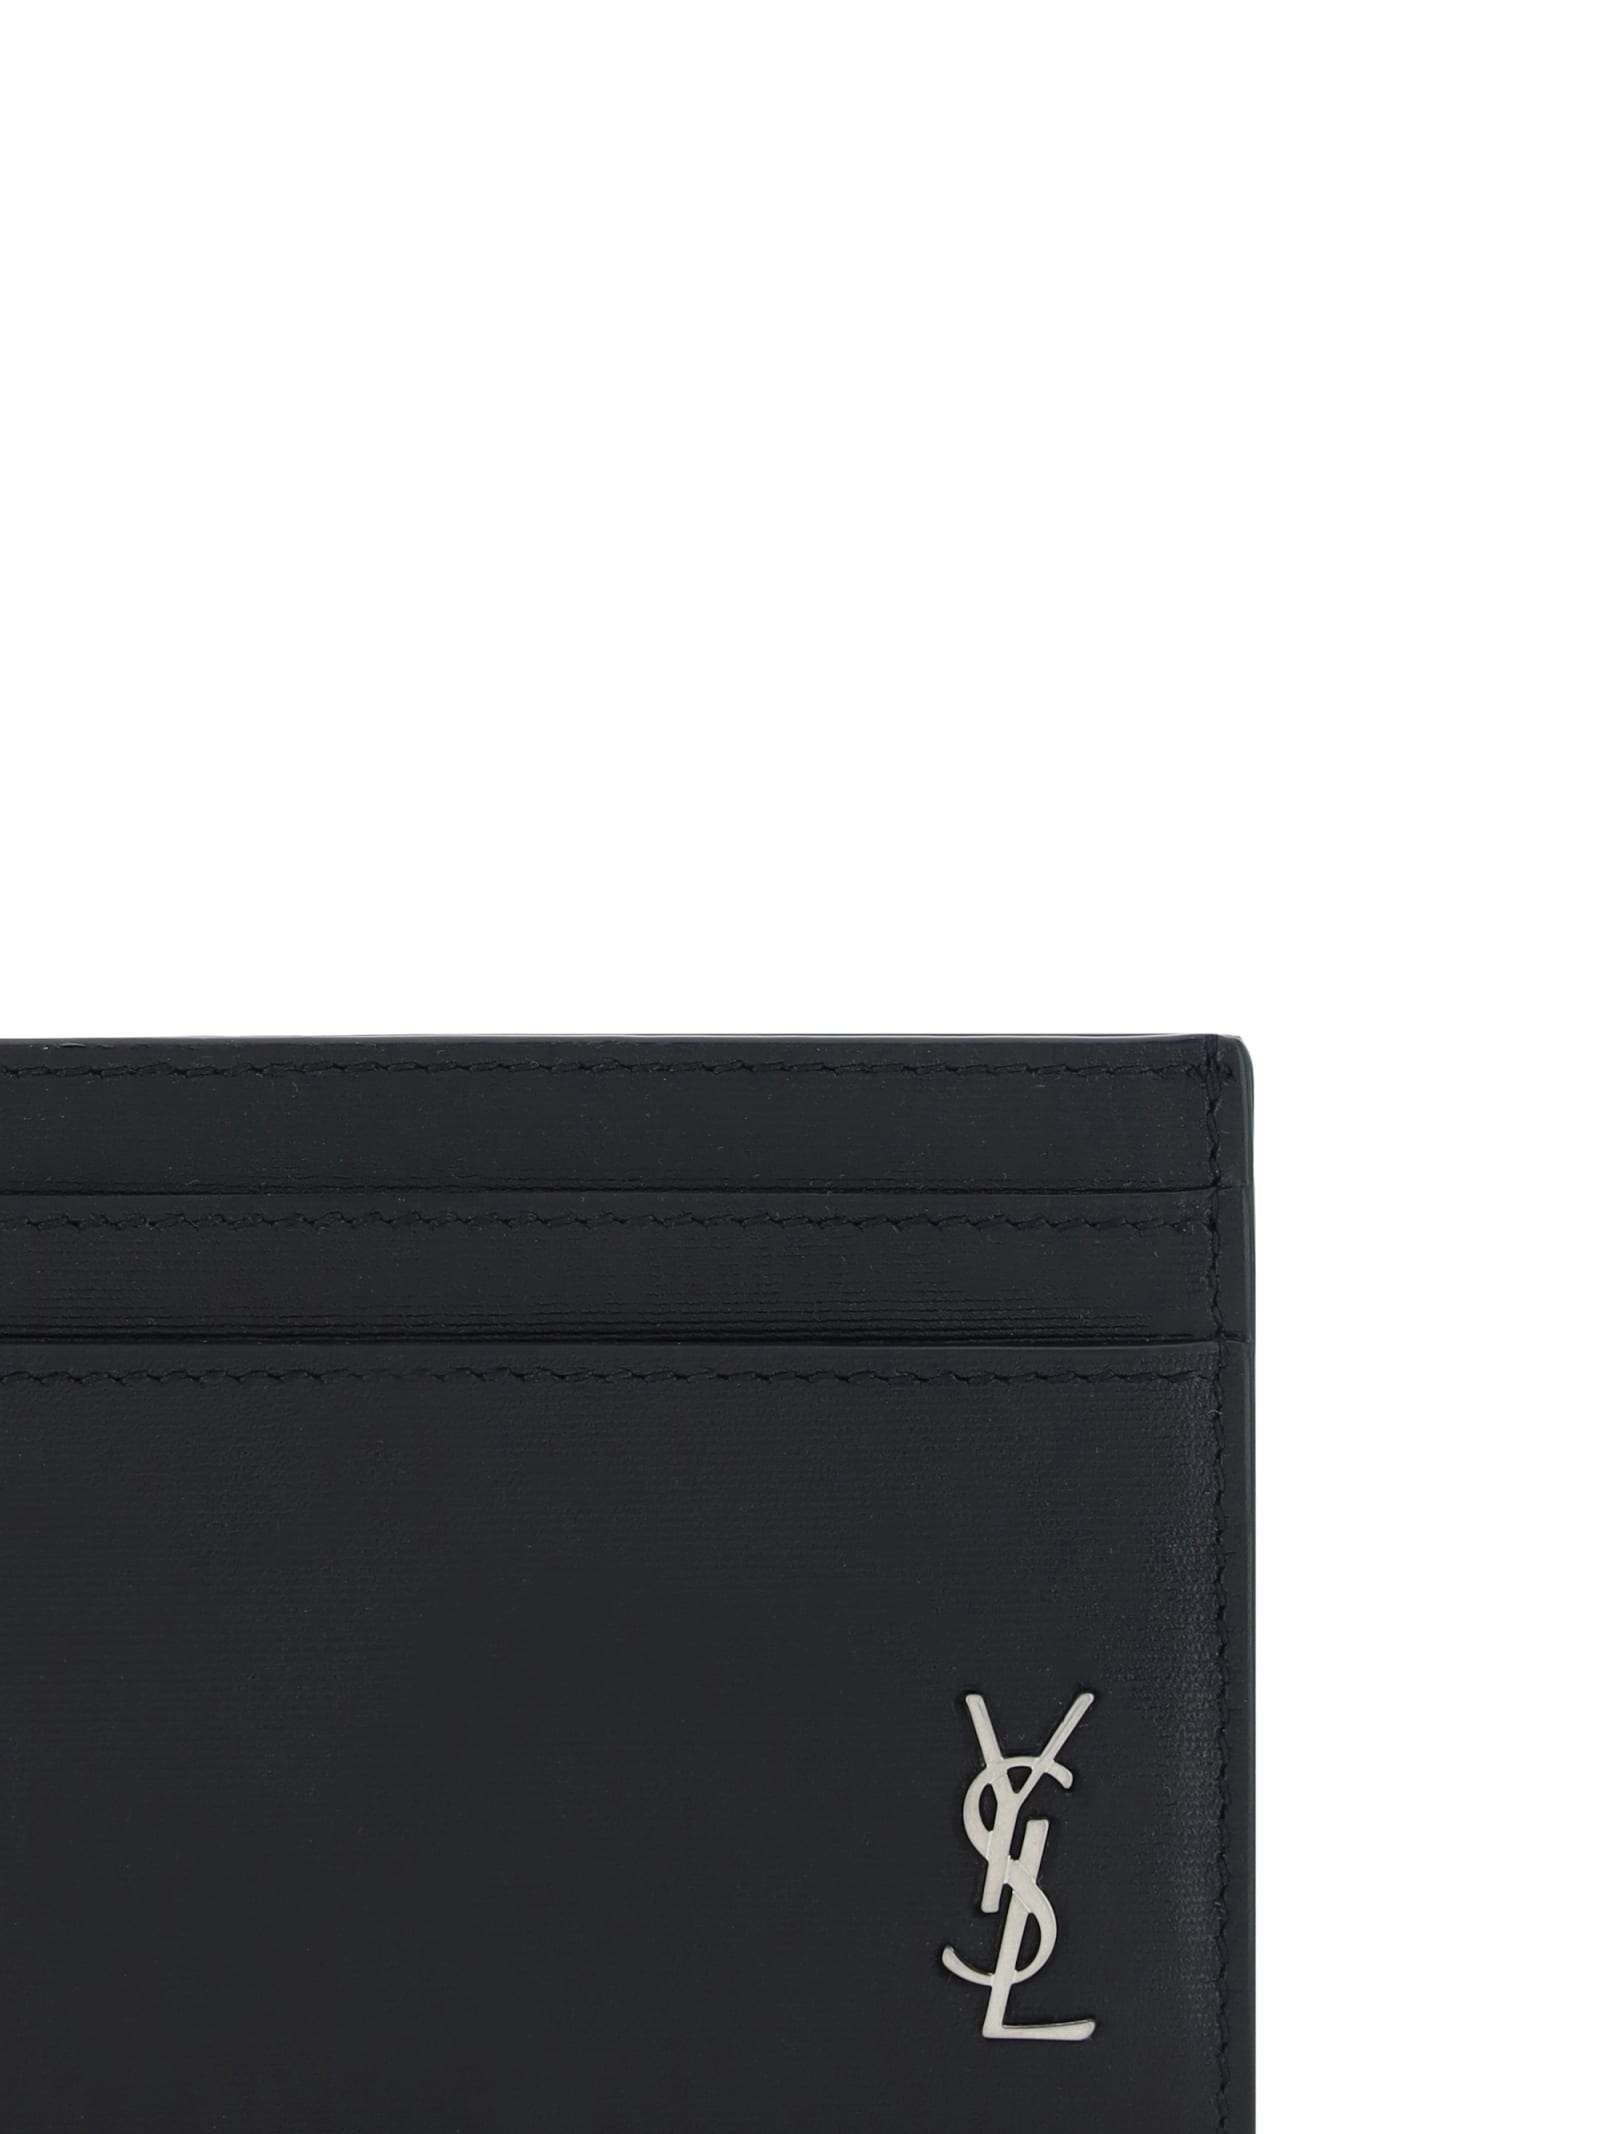 Shop Saint Laurent Ysl Card Holder In Black